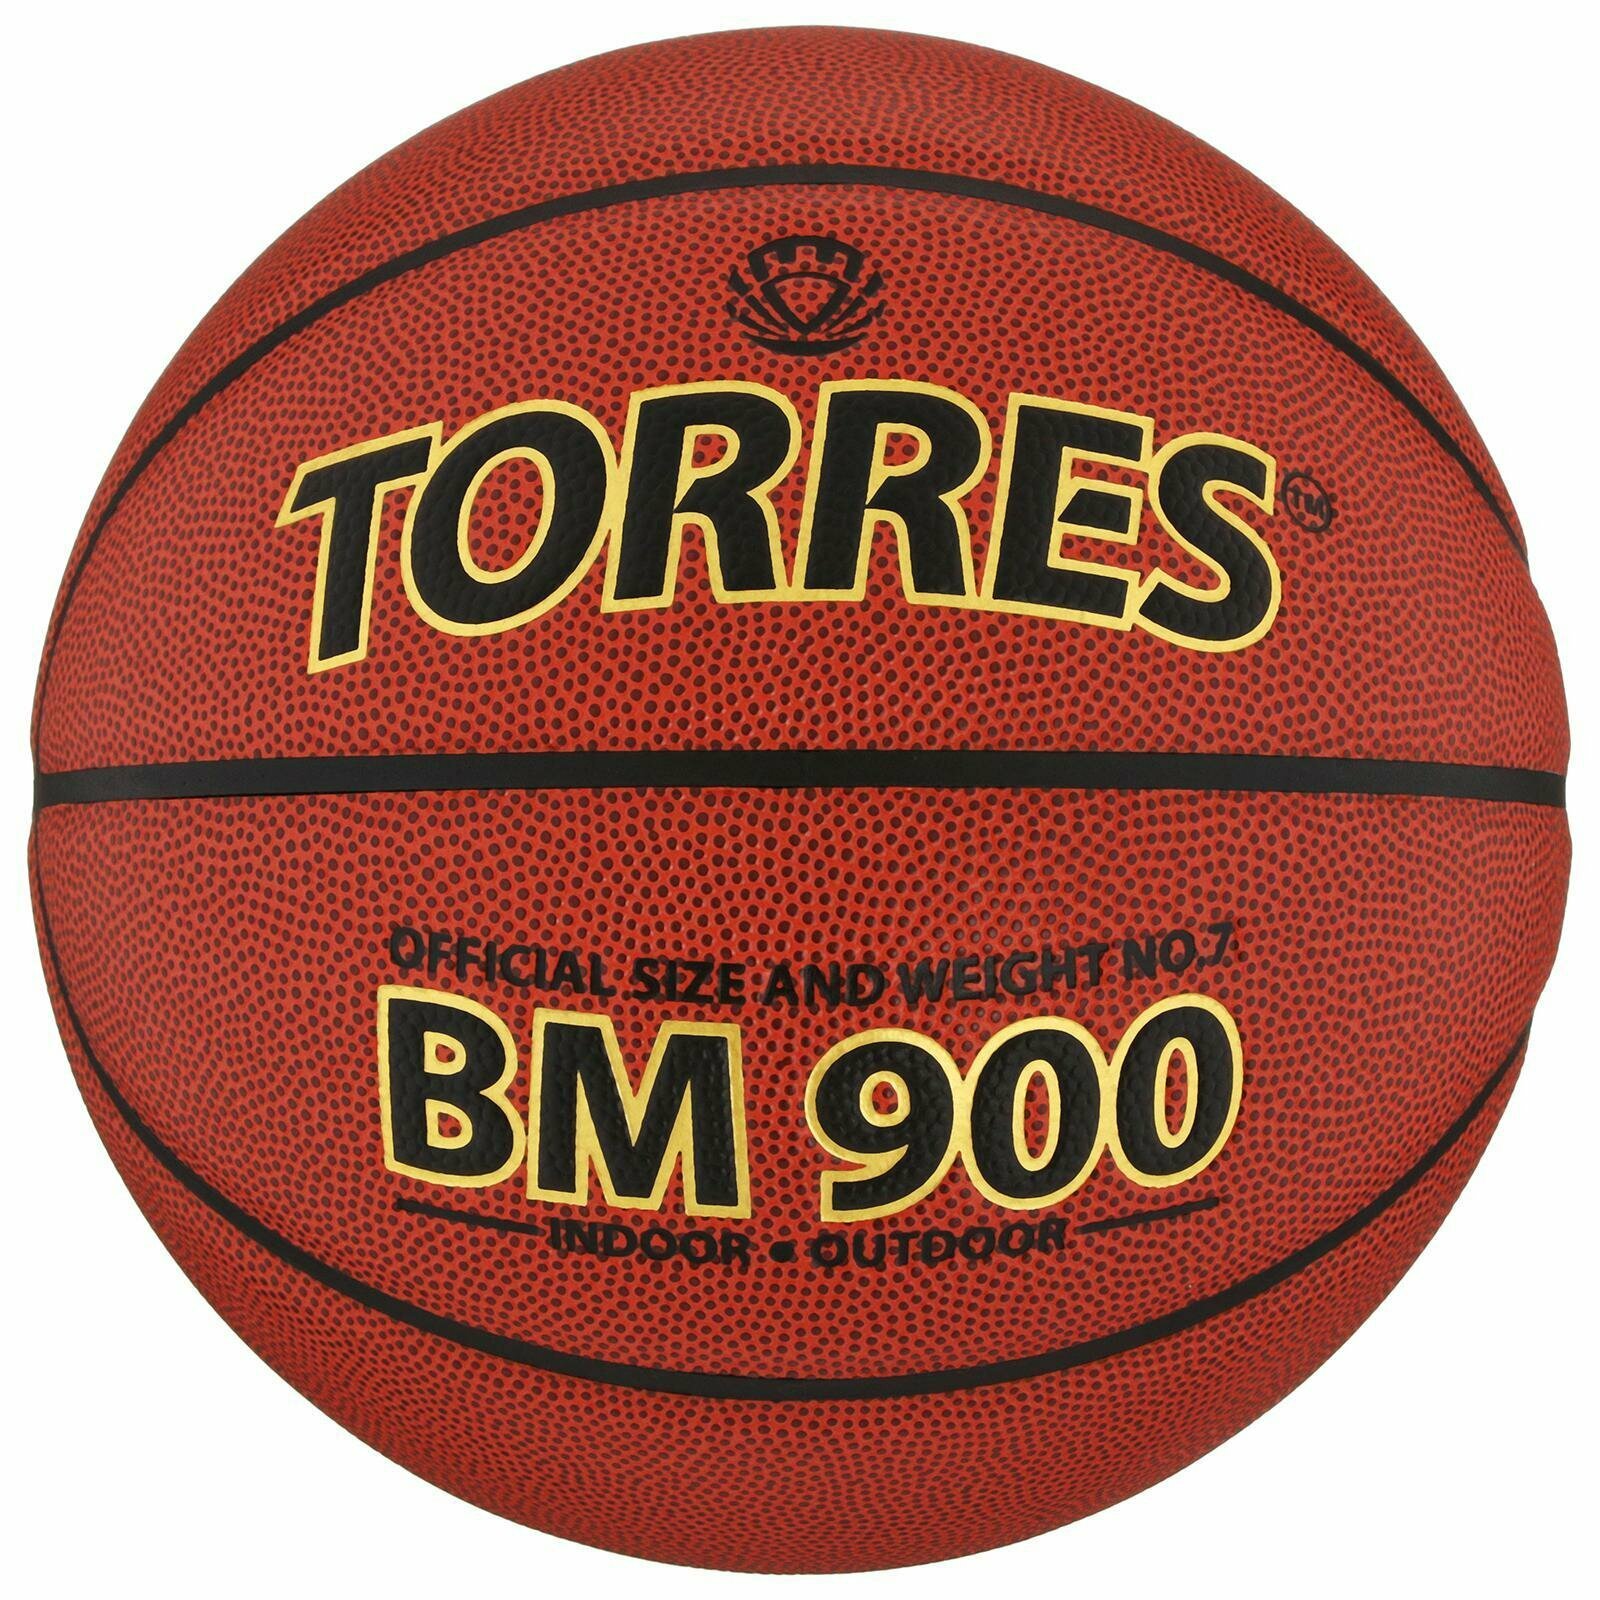 Мяч баскетбольный BM900, B30037, PU, клееный, 8 панелей, размер 7